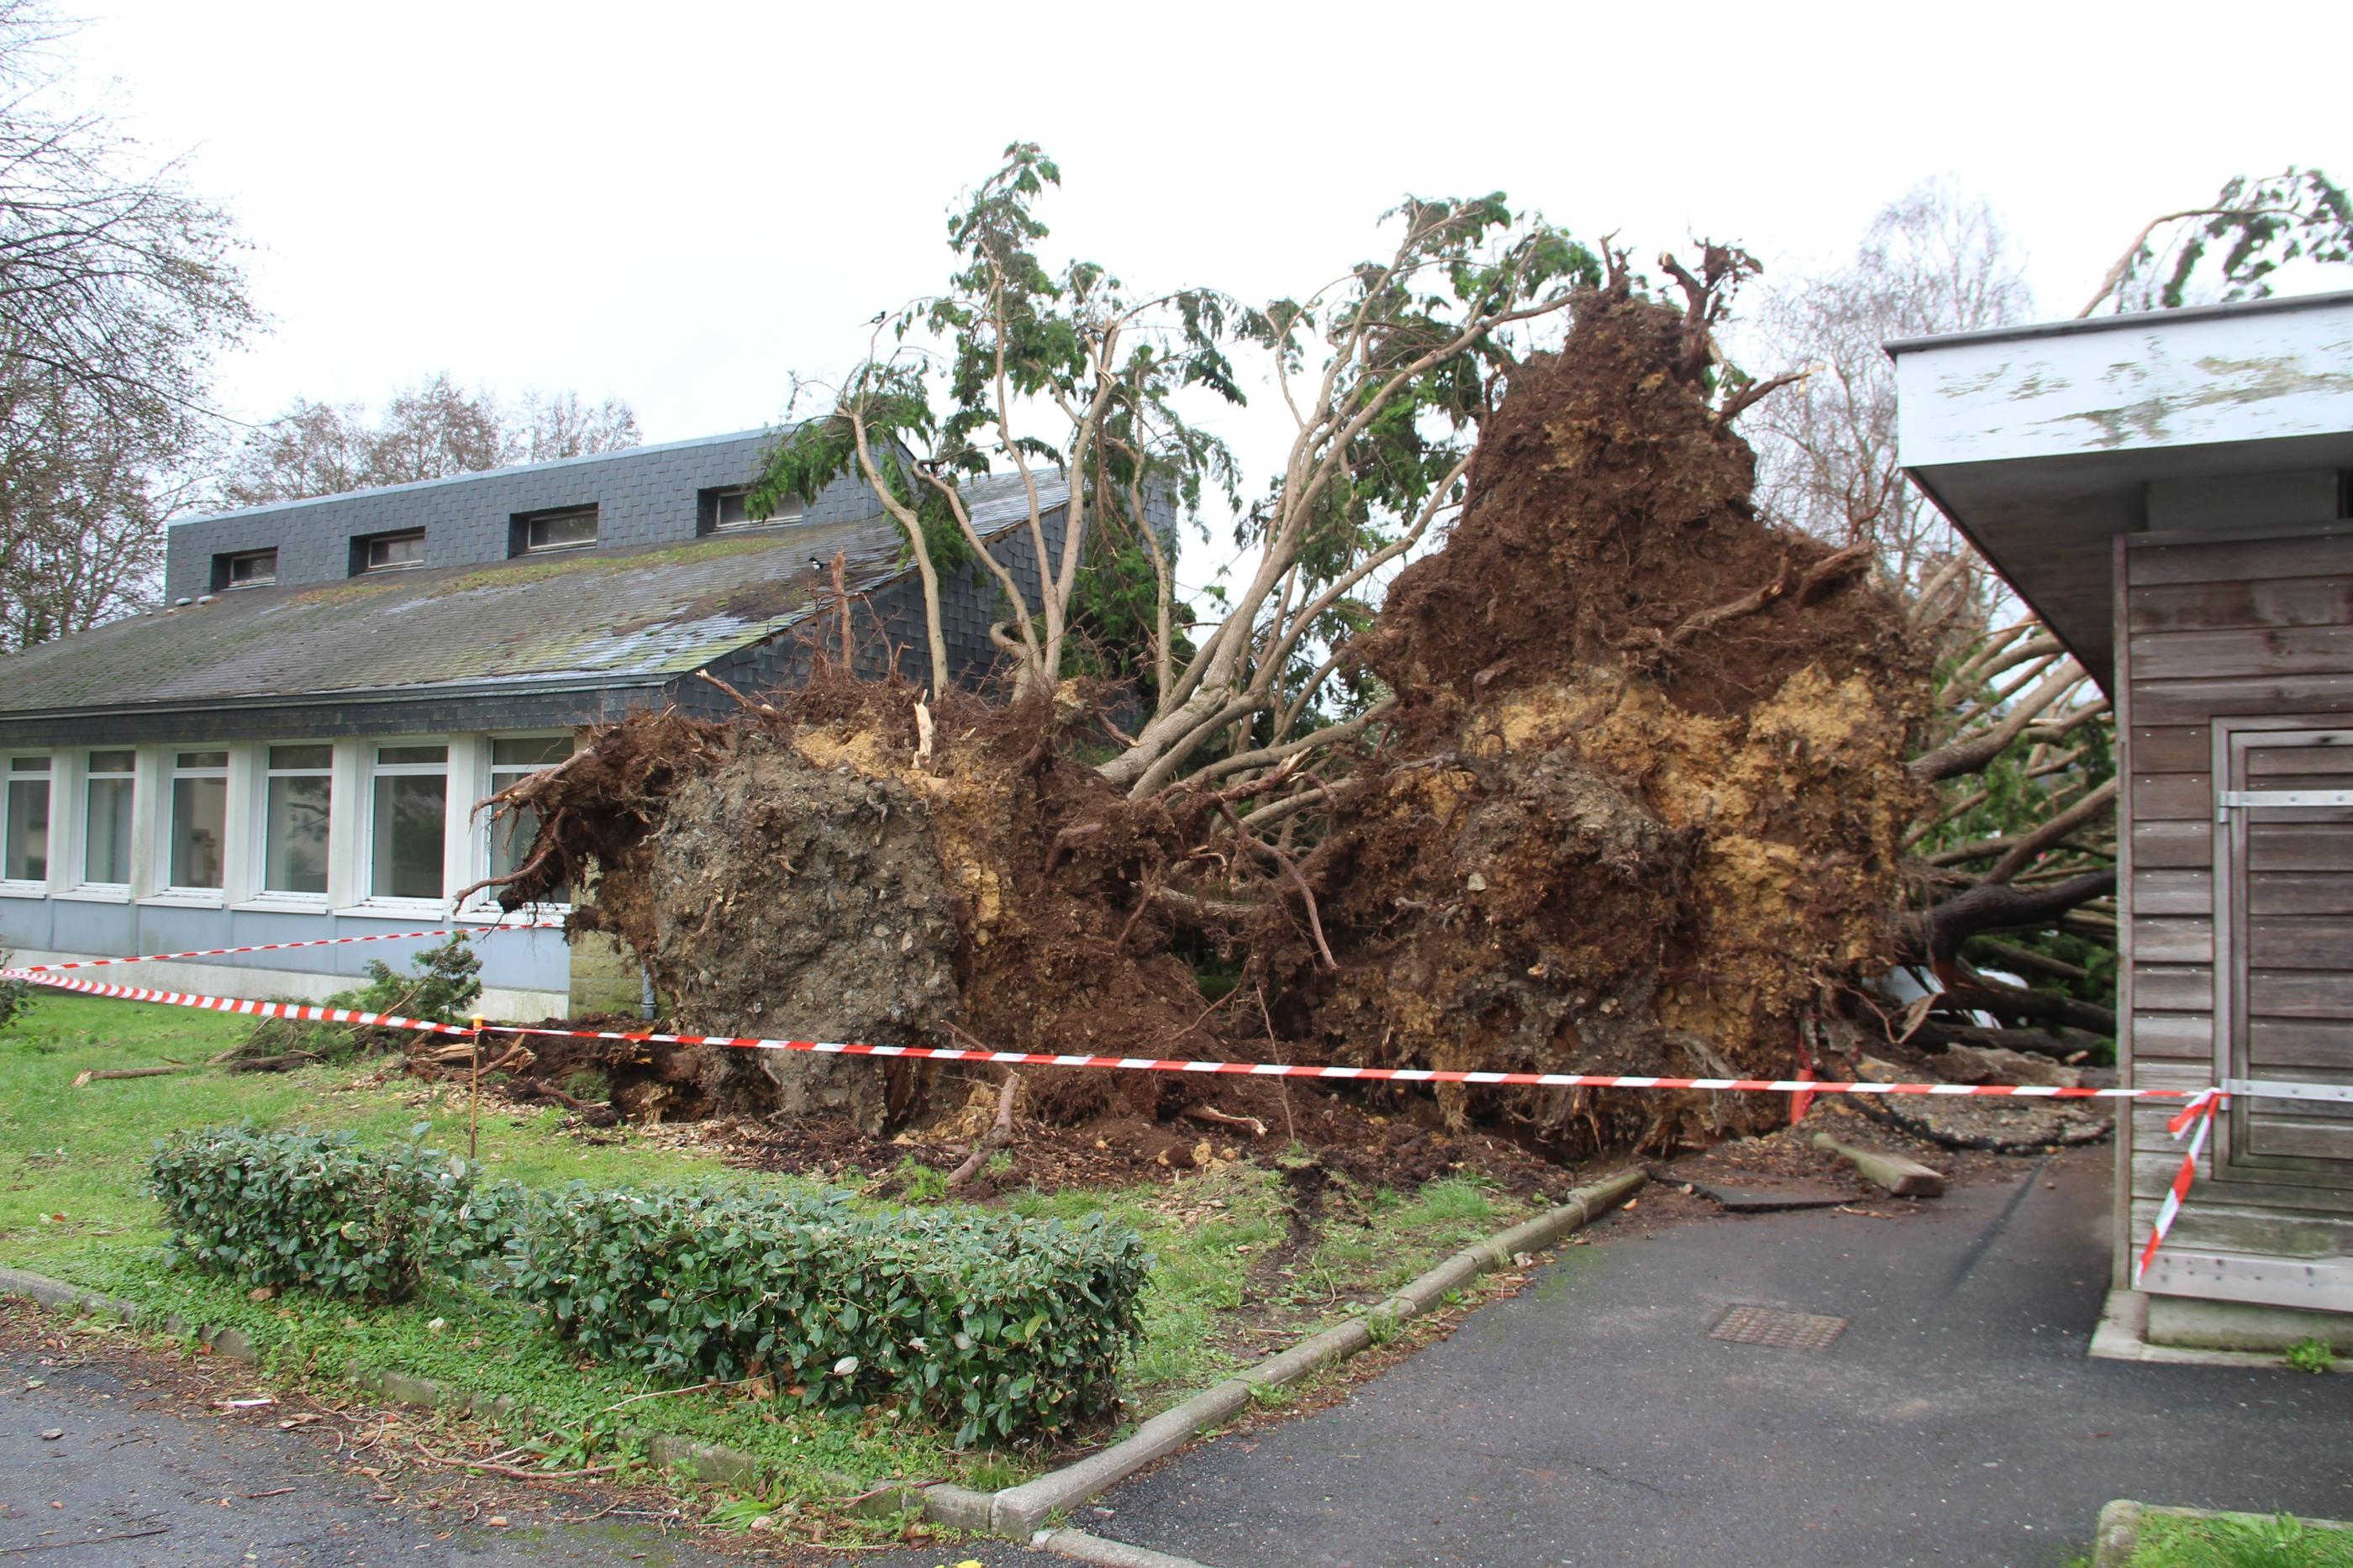 Pays de Doualas (Finistère), samedi 4 novembre. Les stigmates de la tempête sont encore bien visibles, avec notamment des arbres arrachés et des routes barrées. LP/Nora Moreau